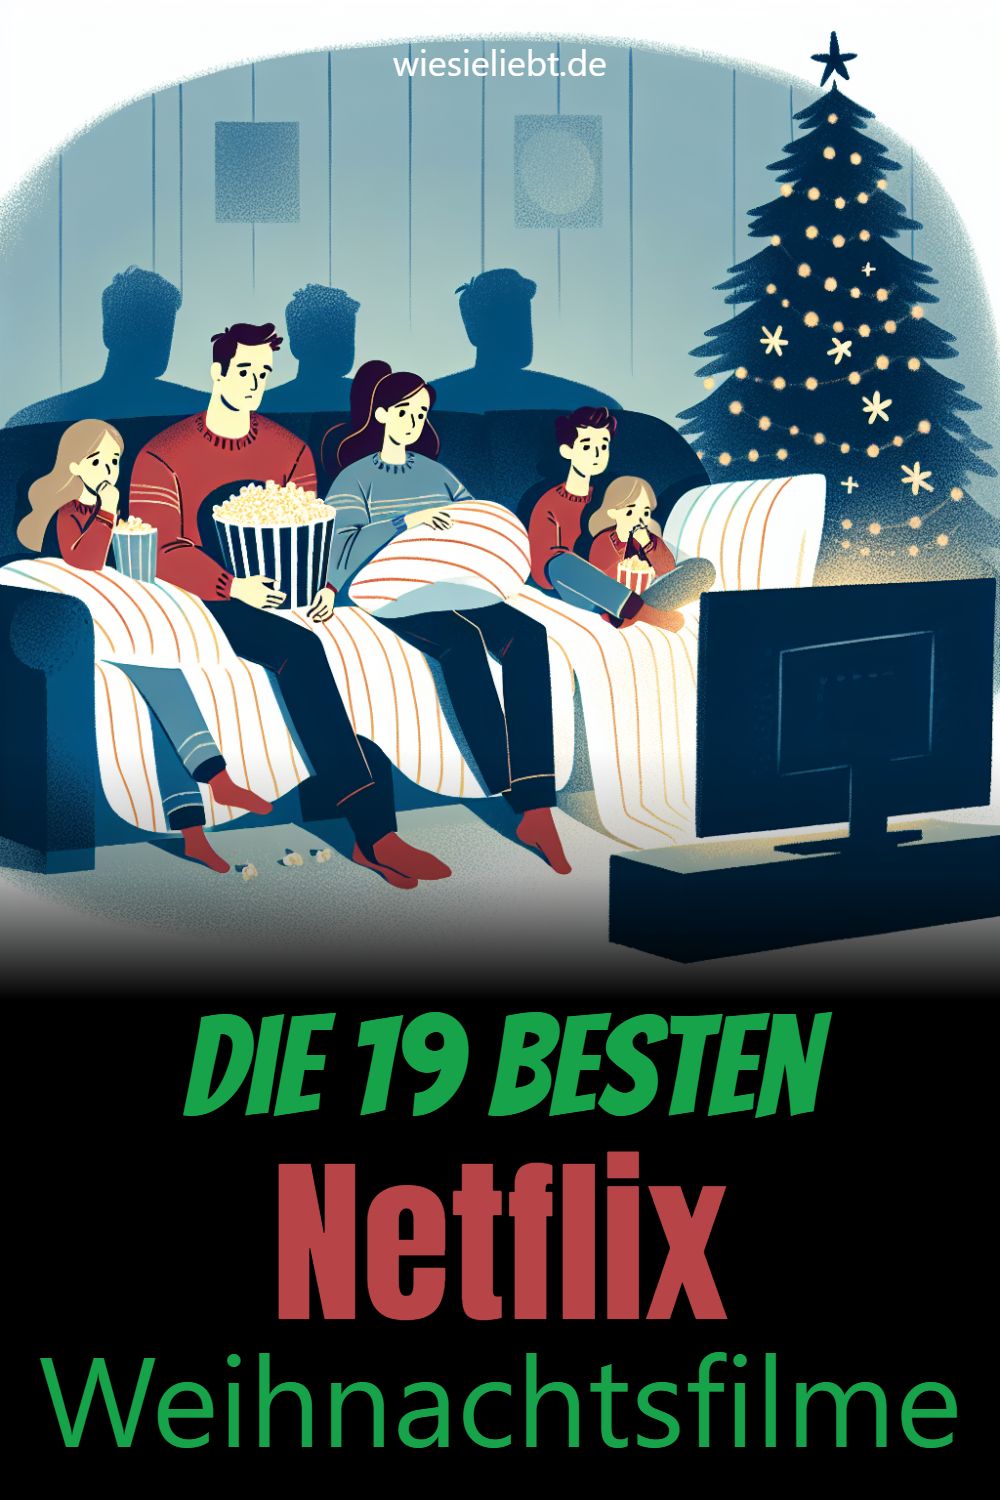 Die 19 besten Netflix Weihnachtsfilme